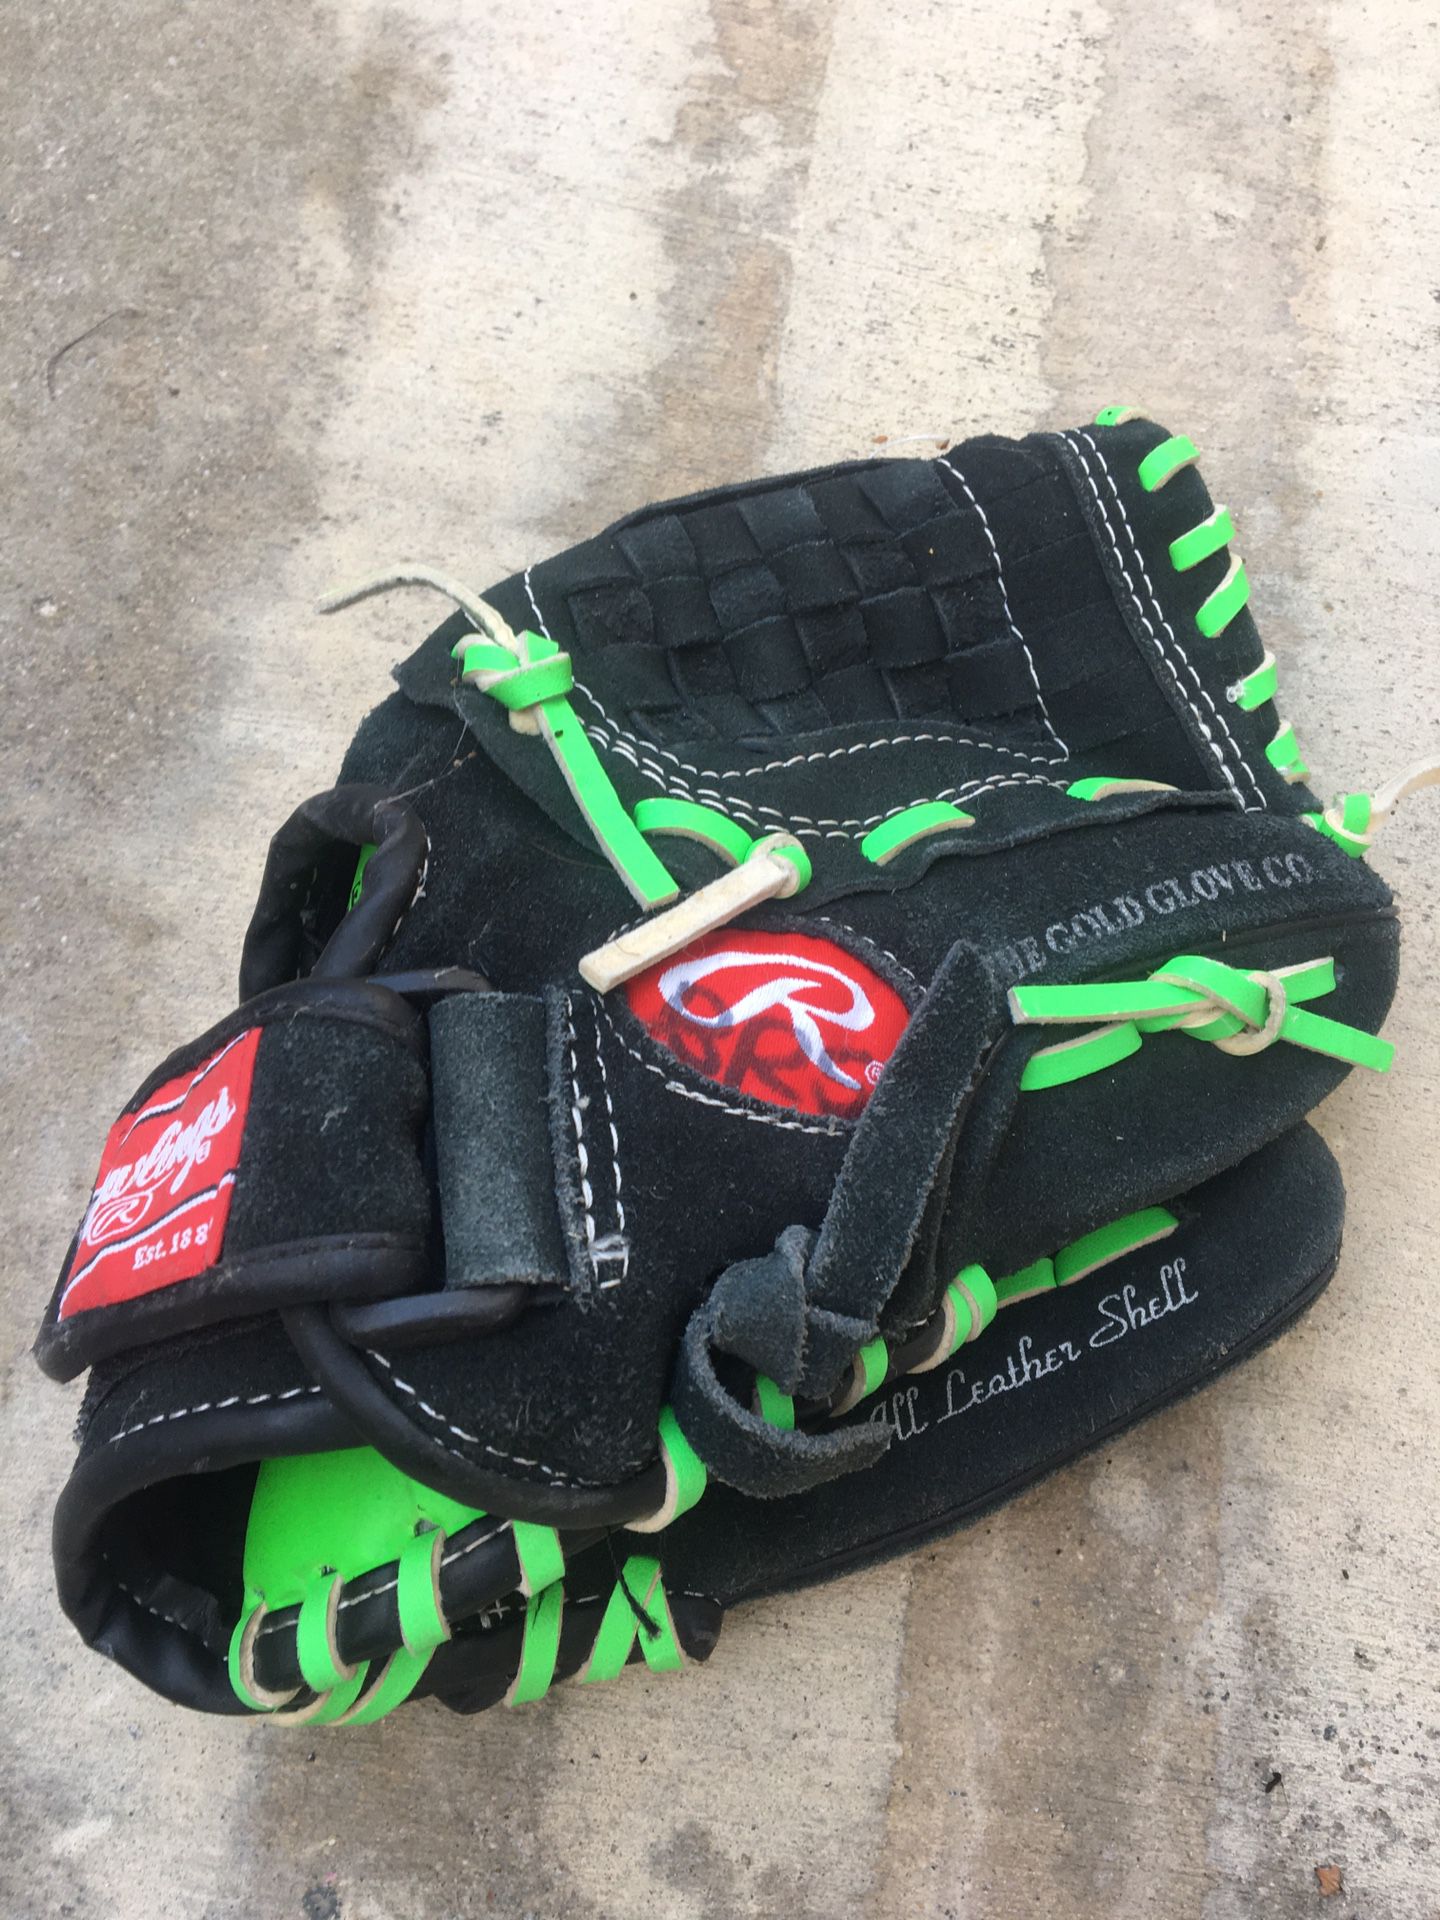 Rawlings youth baseball glove size small